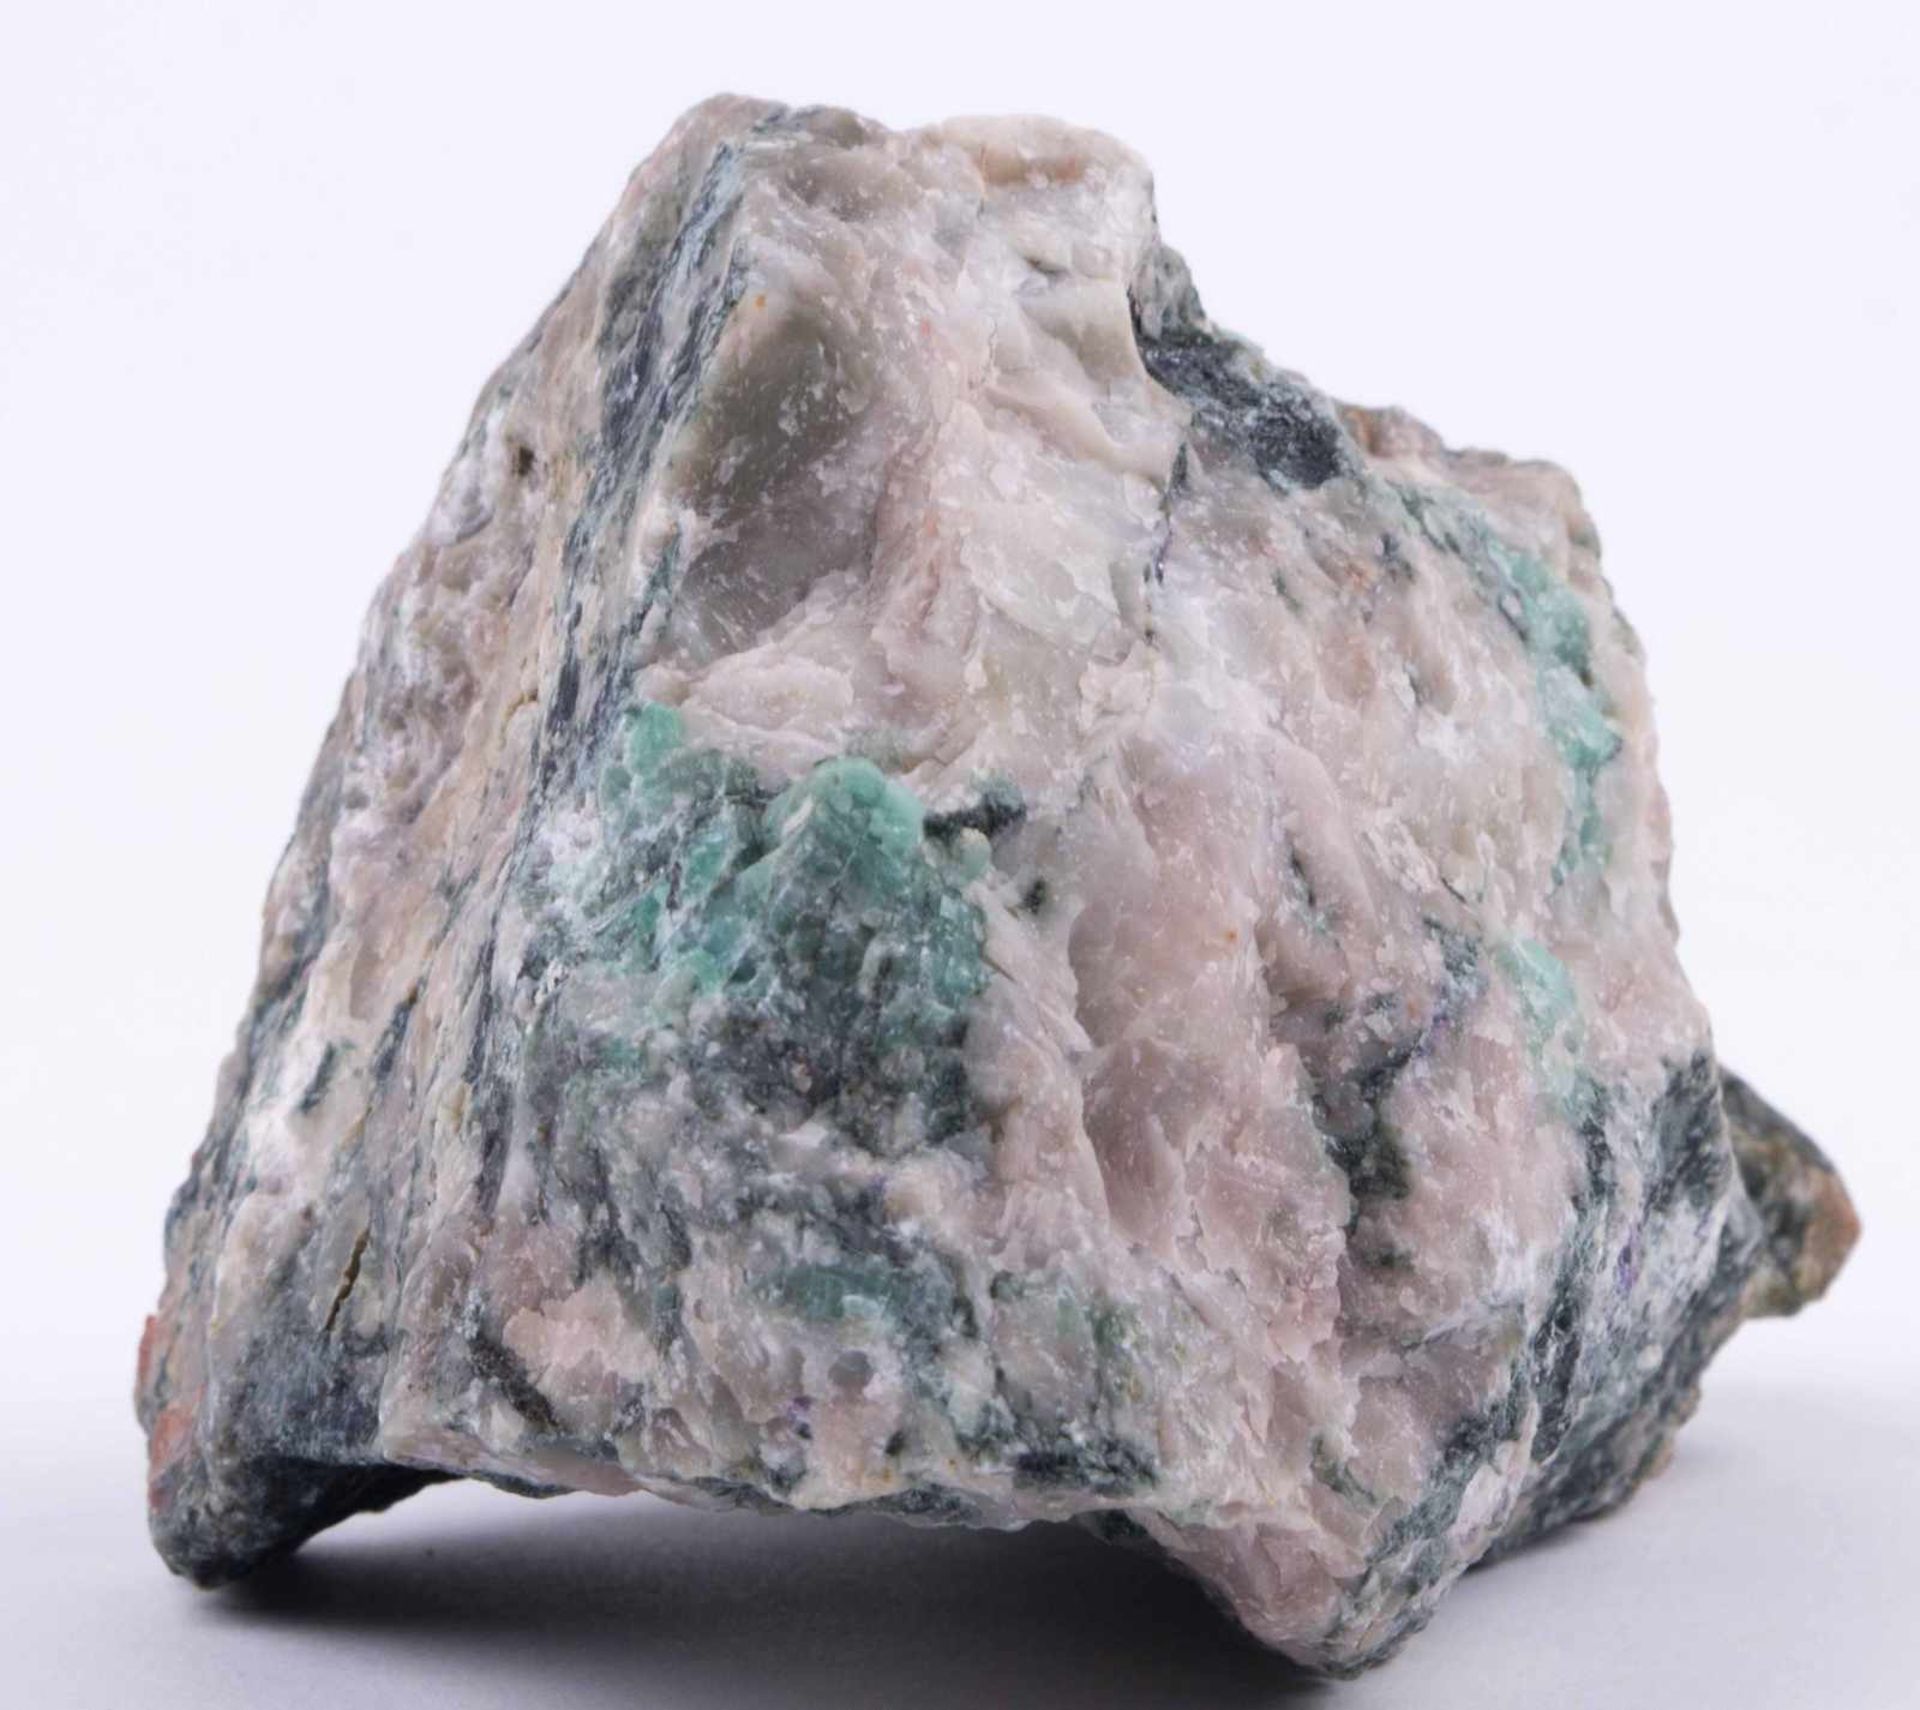 Smaragd im Muttergestein Kolumbien / Emerald in parent rock, Colombia Smaragd in sehr schöner Farbe, - Bild 2 aus 3